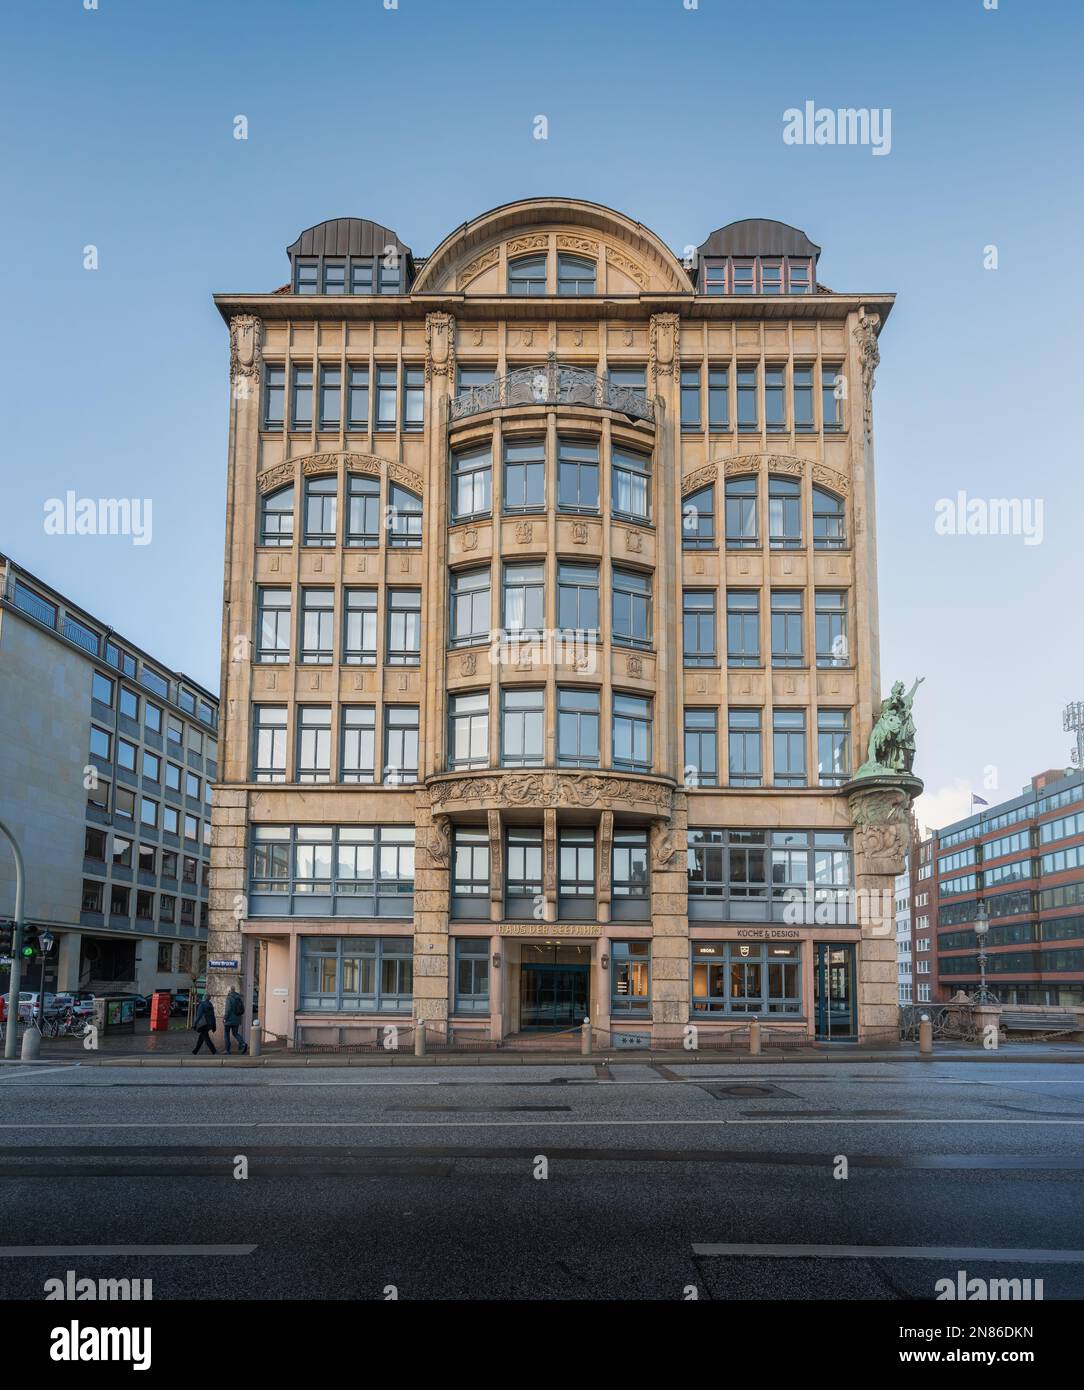 Bâtiment Haus der Seefahrt - Hambourg, Allemagne Banque D'Images